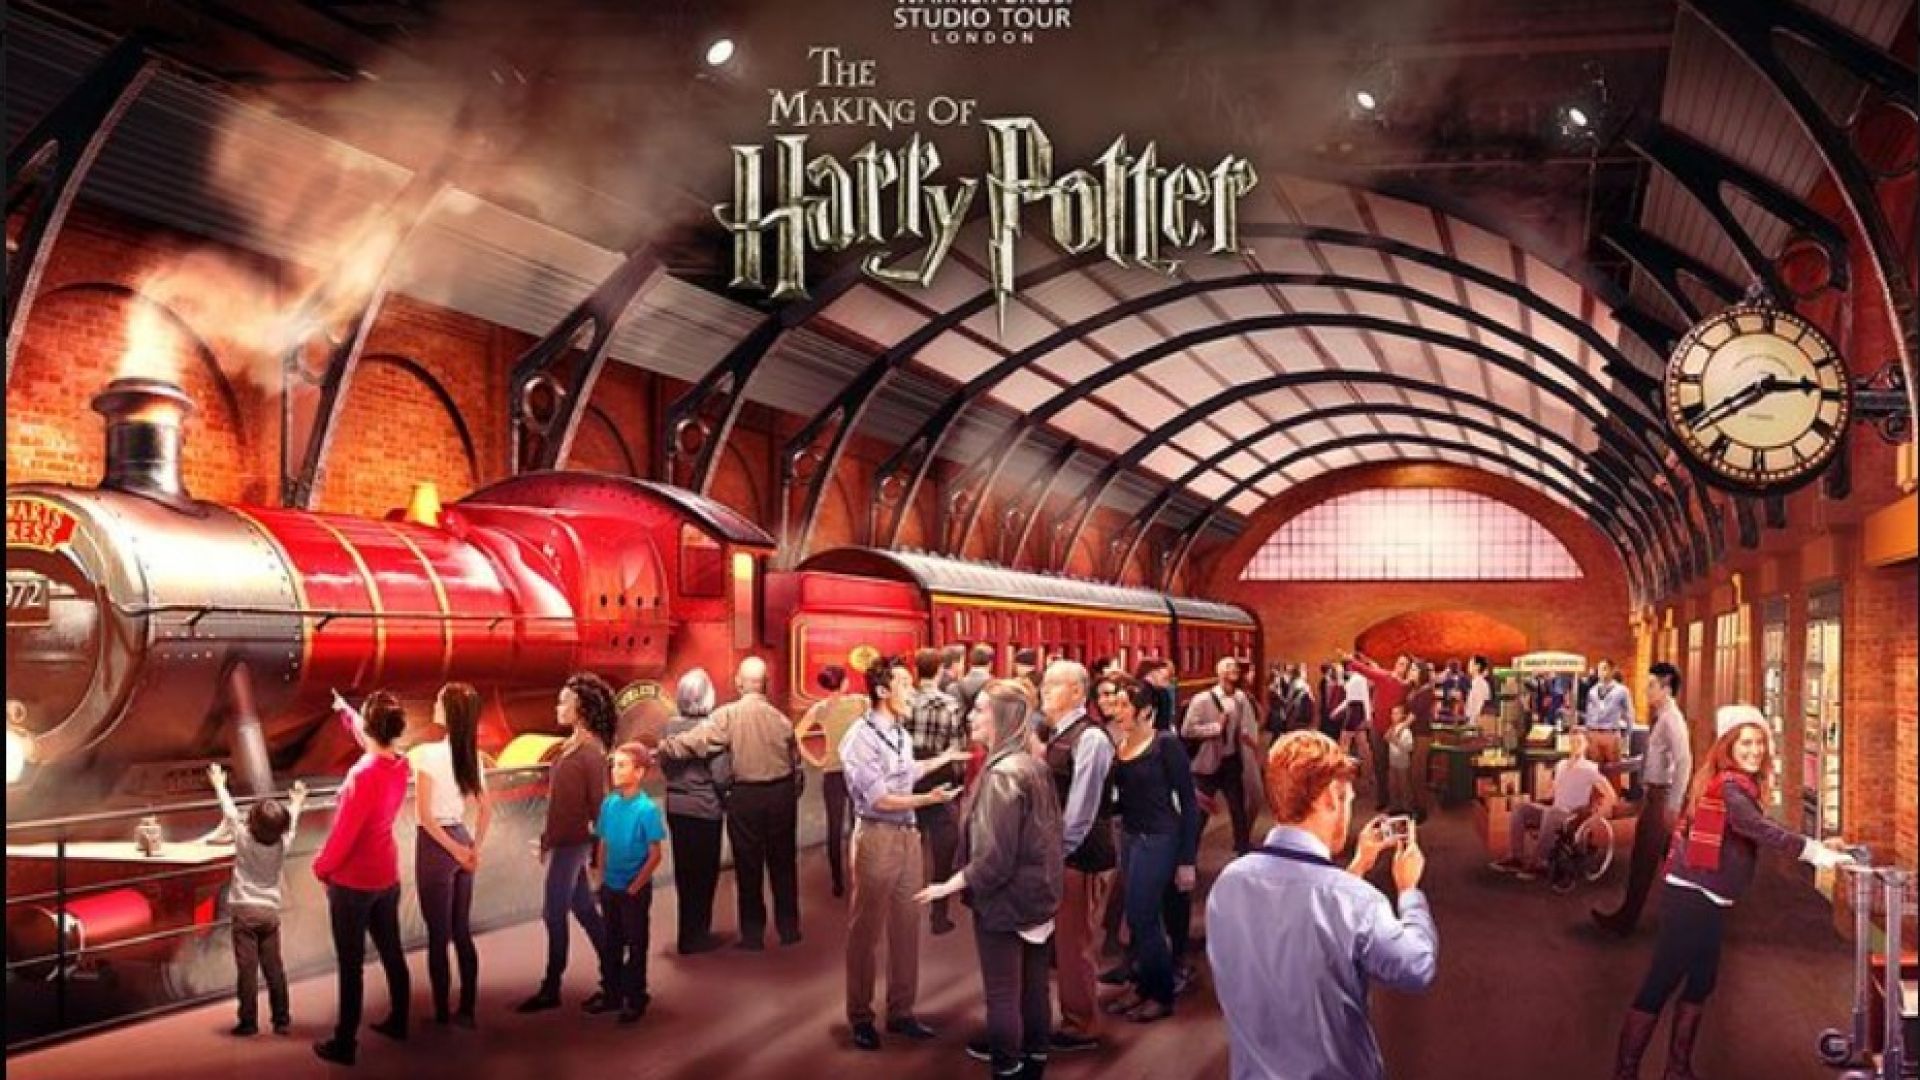 Londres y Harry Potter - Puente de Diciembre